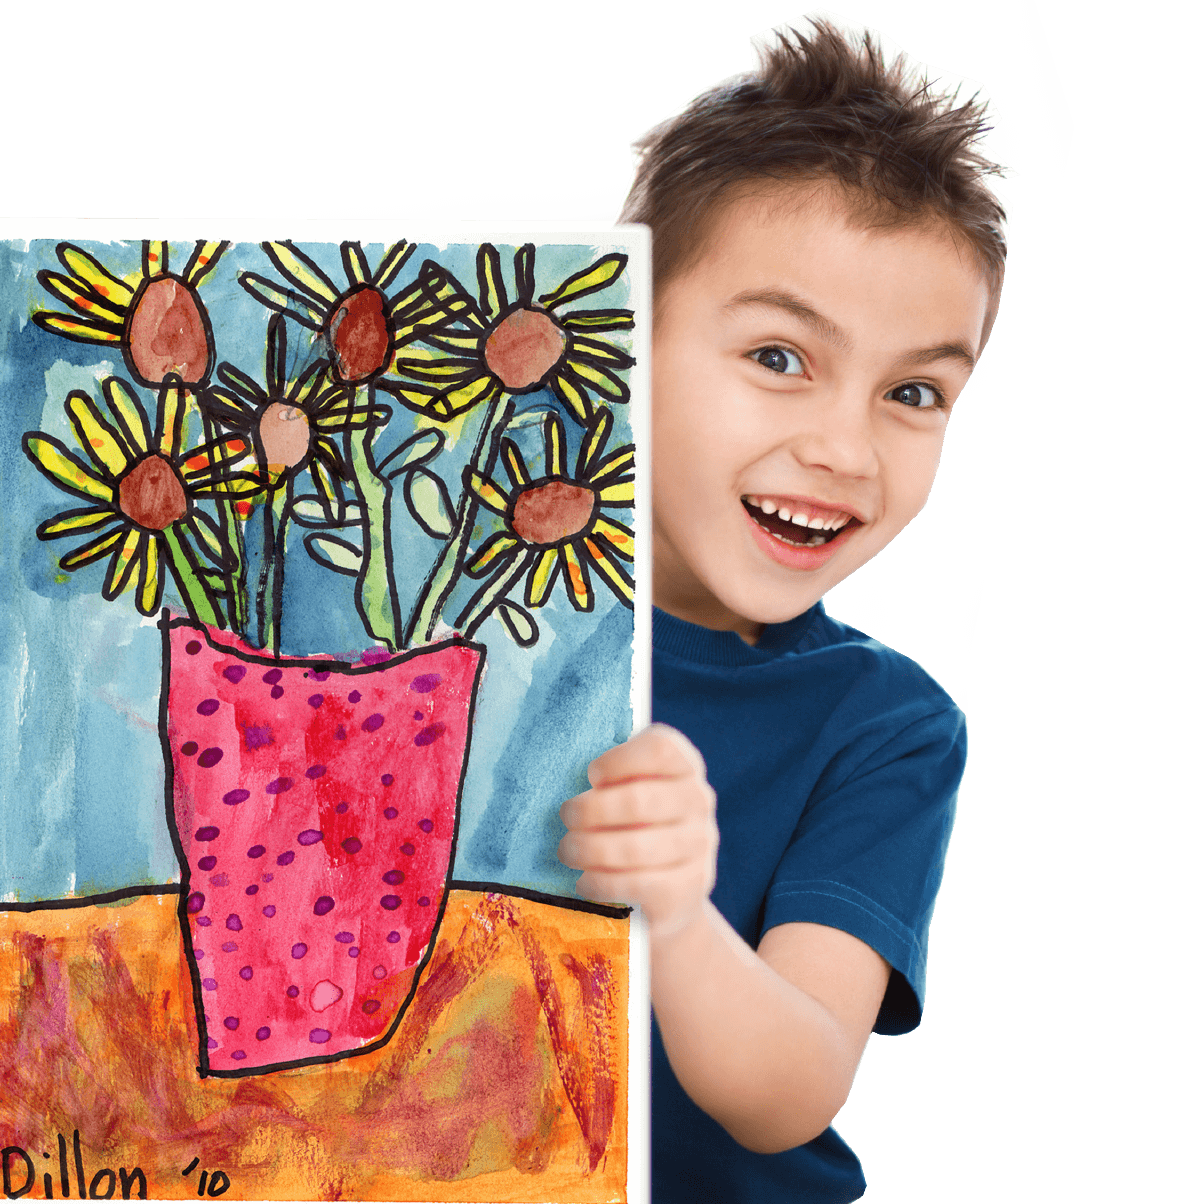 Child holding artwork